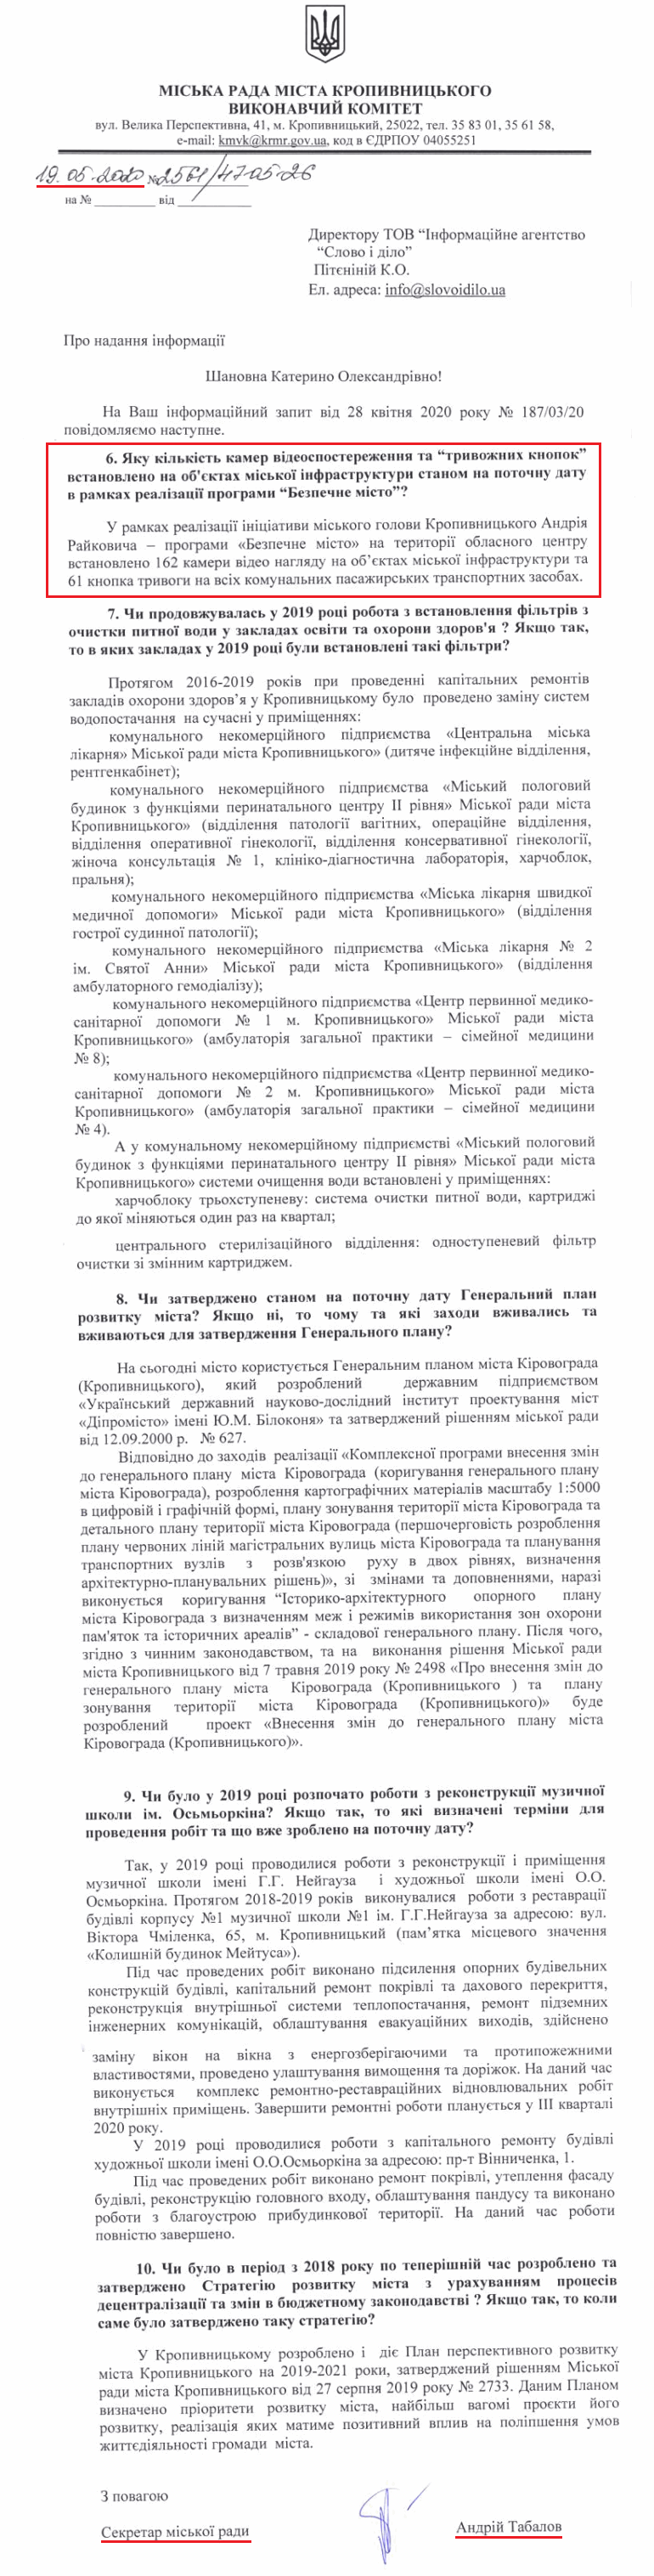 Лист секретаря міської ради А. Табалова